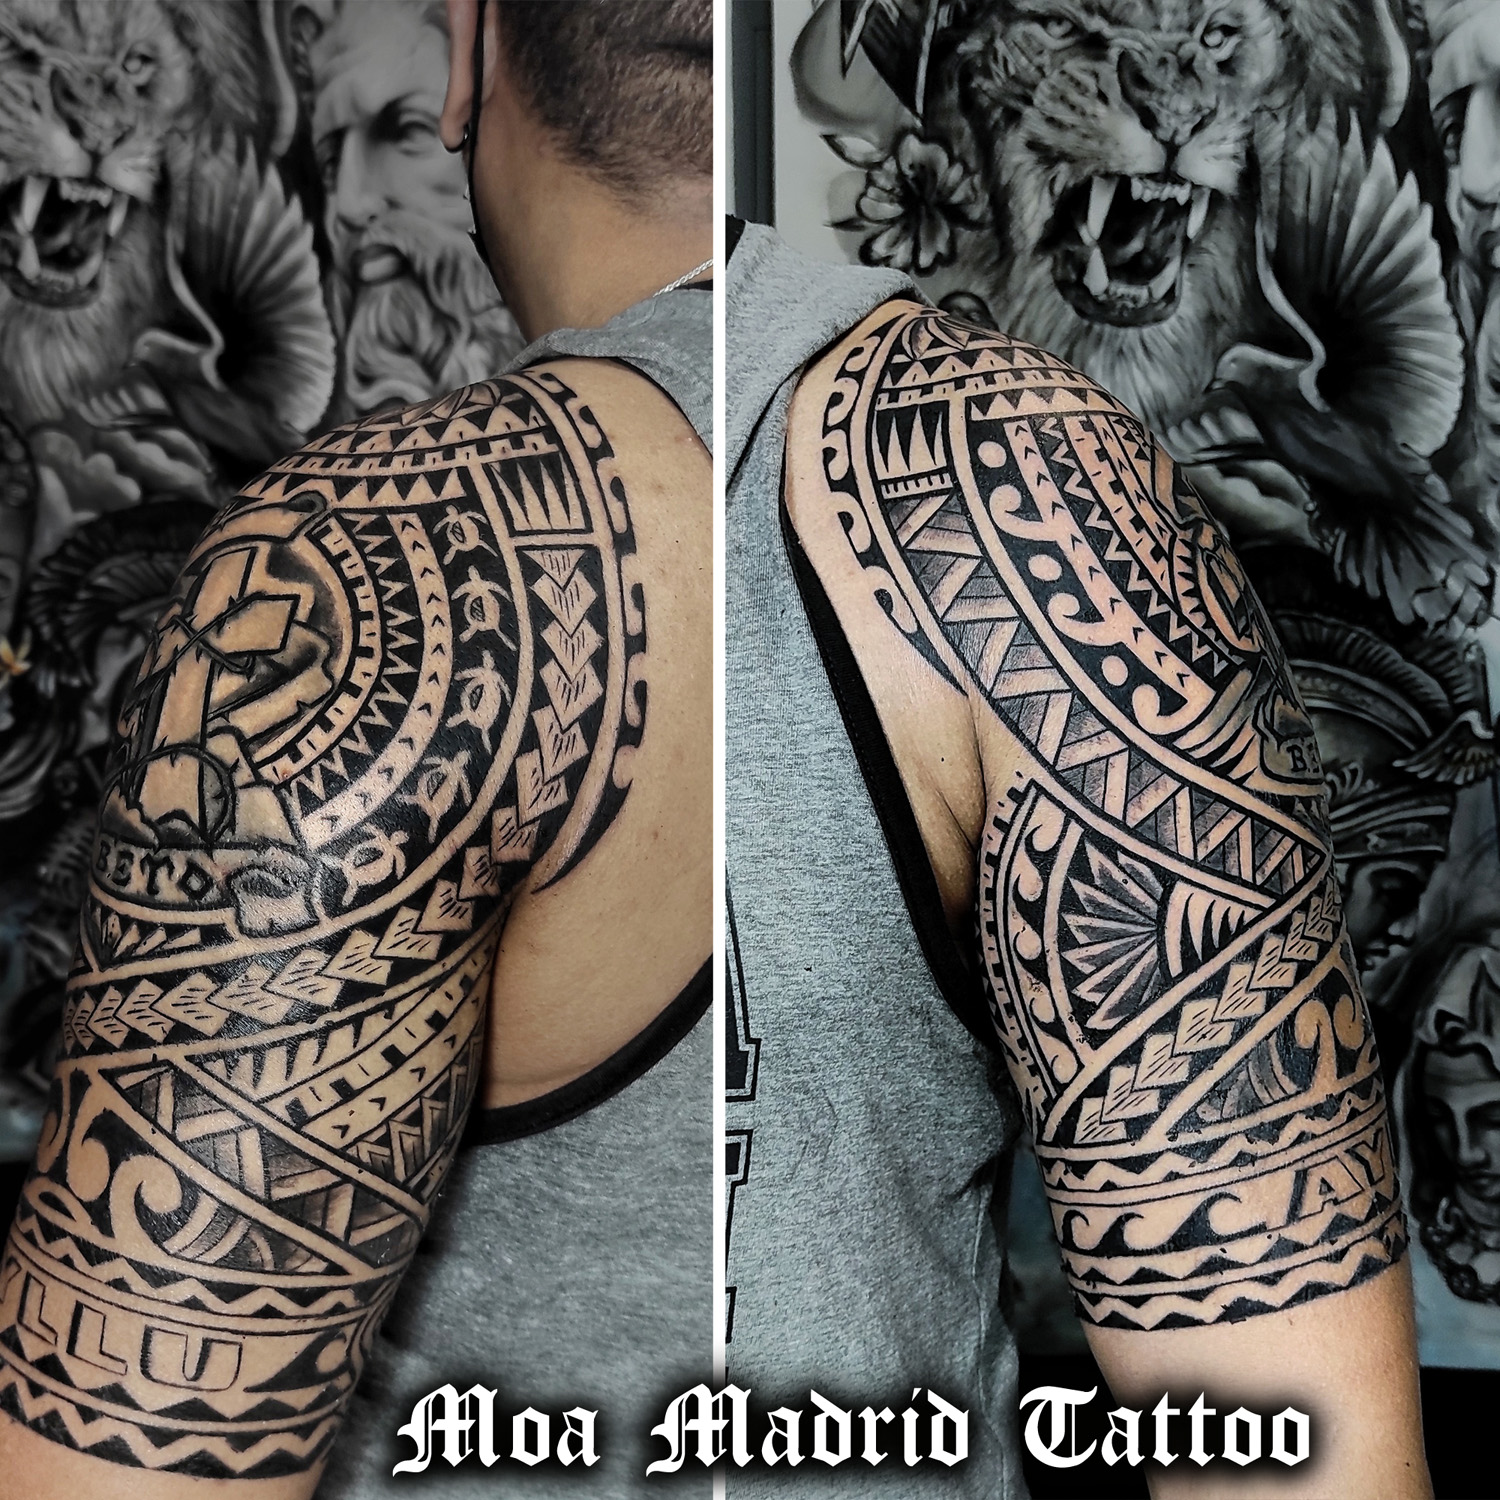 Viene de Estados Unidos a hacerse un tatuaje maorí en Madrid tatuaje maorí, diseño exclusivo en Madrid